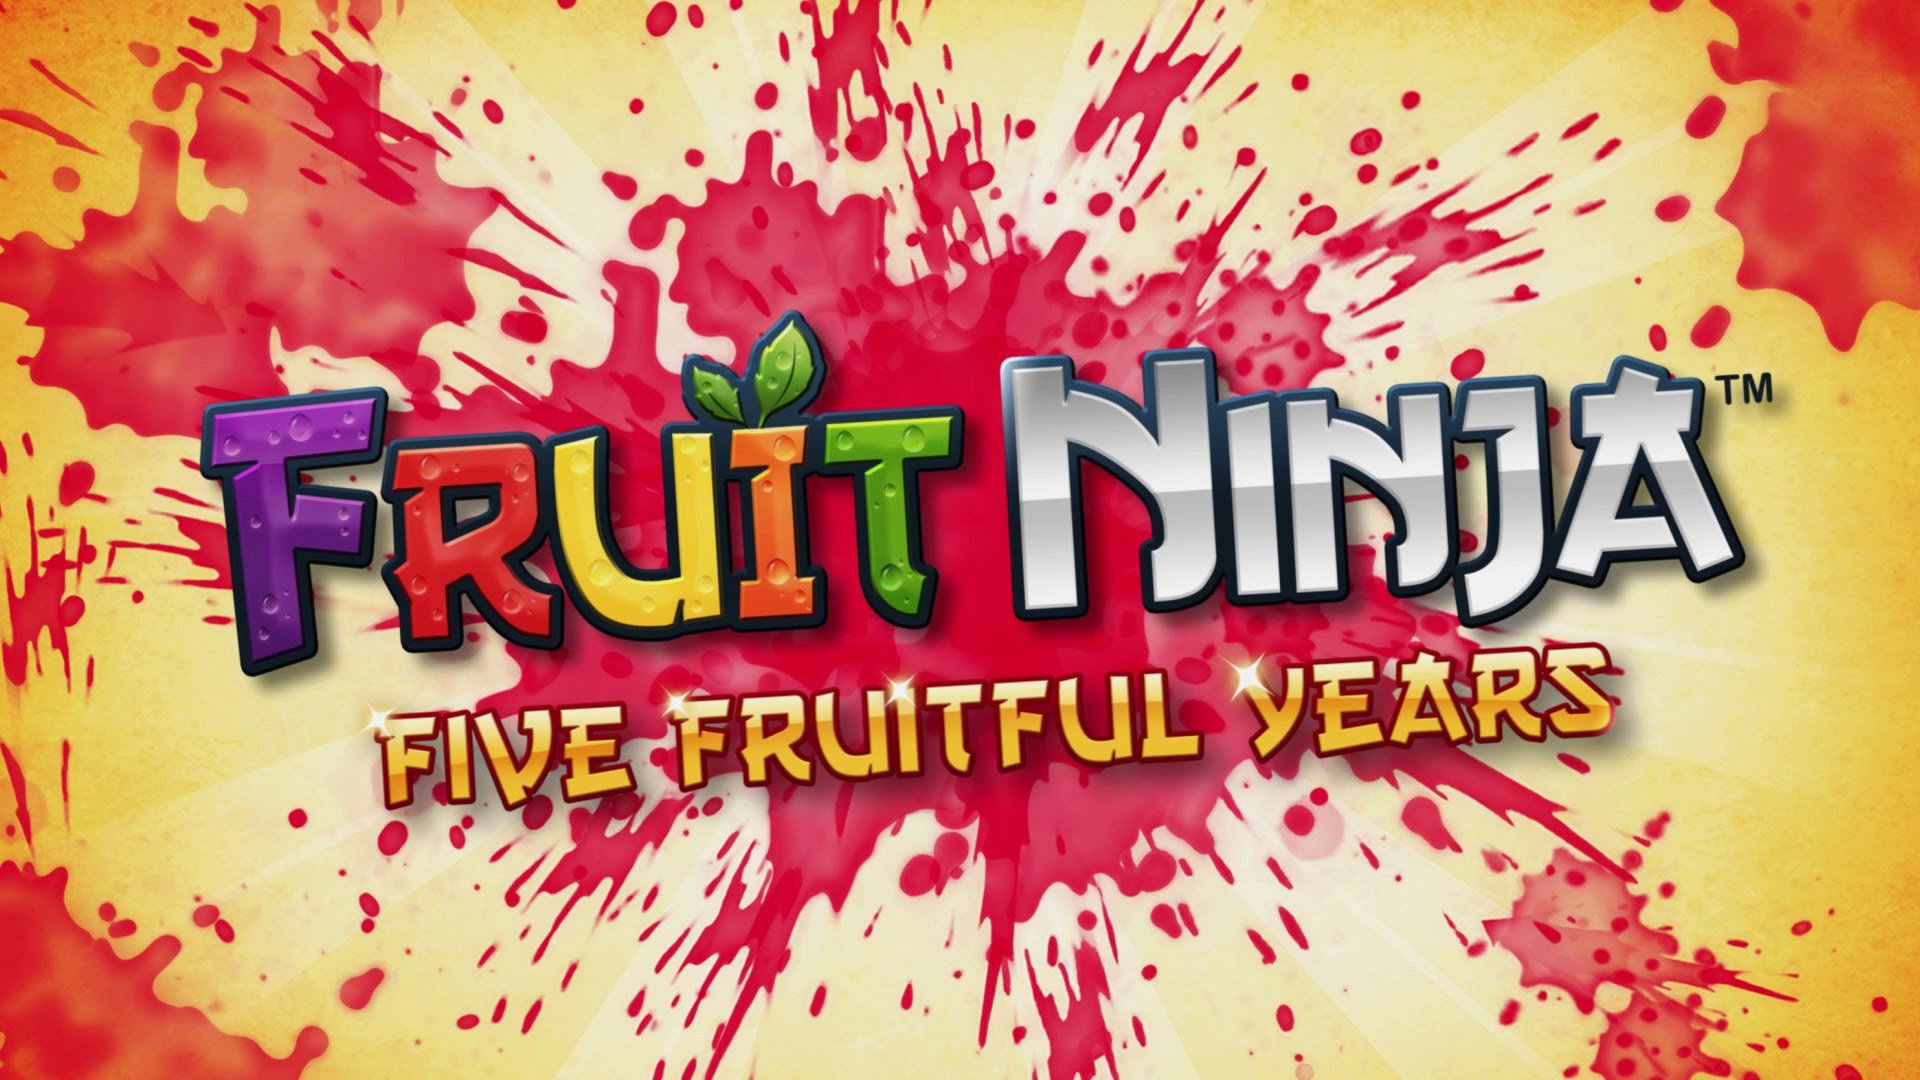 fruit, Ninja, Kinect, Xbox, Microsoft, Adventure, 1fnk, Action, Warrior, Poster Wallpaper